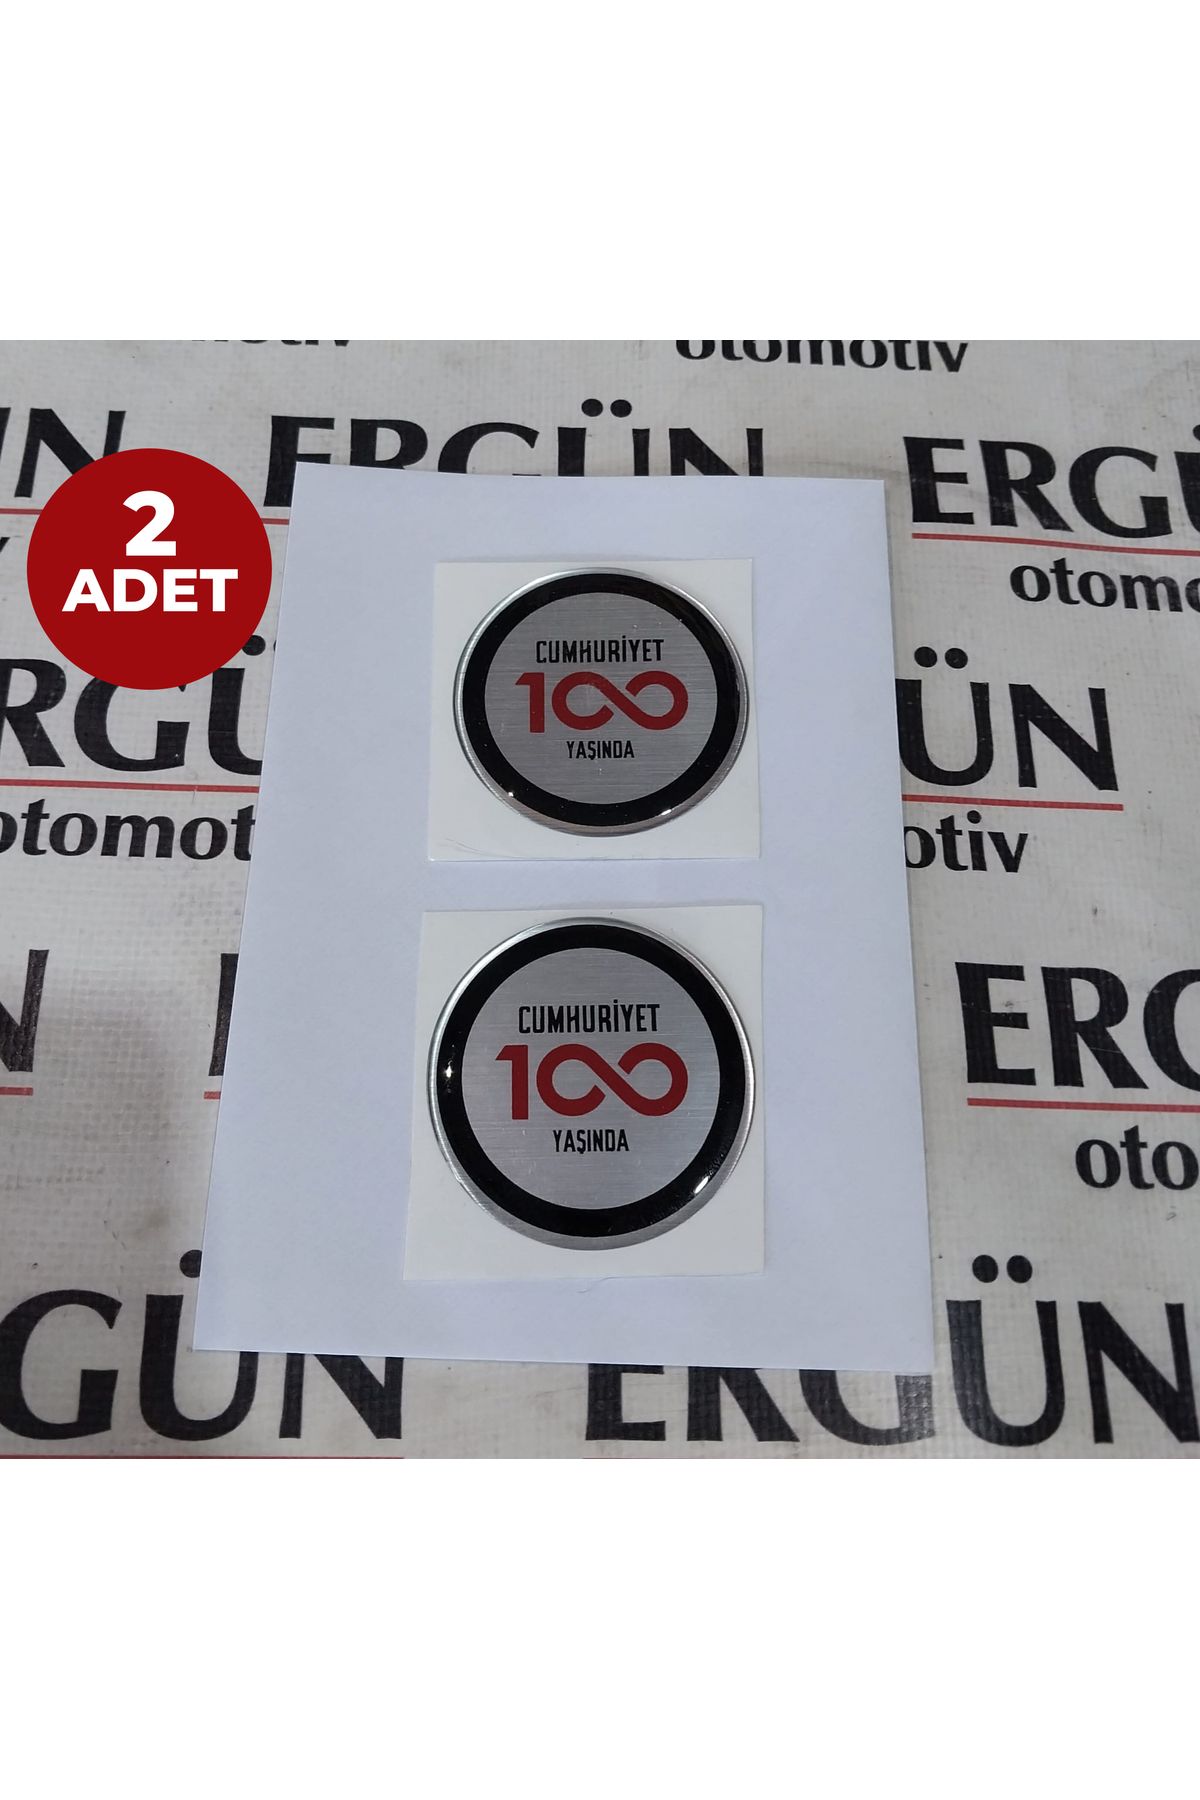 SERKAR Egea-doblo-fıorıno Cumhuriyet 100 Yaşında Yazısı-logosu 2li Ürün.